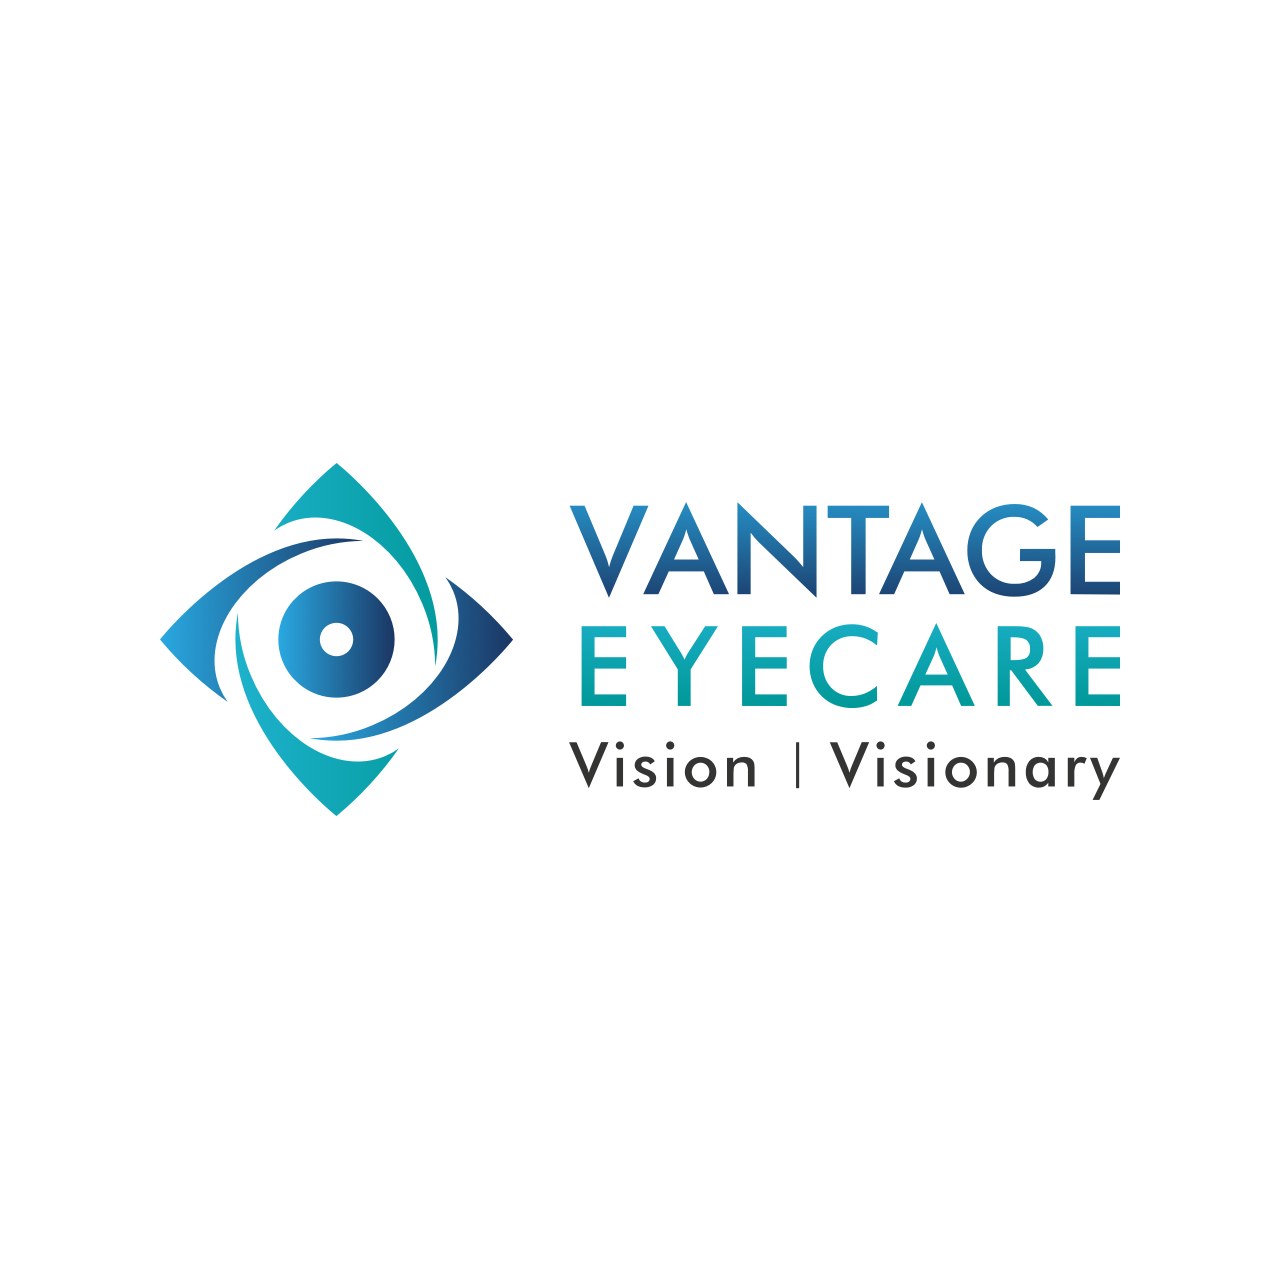 Vantage Eyecare